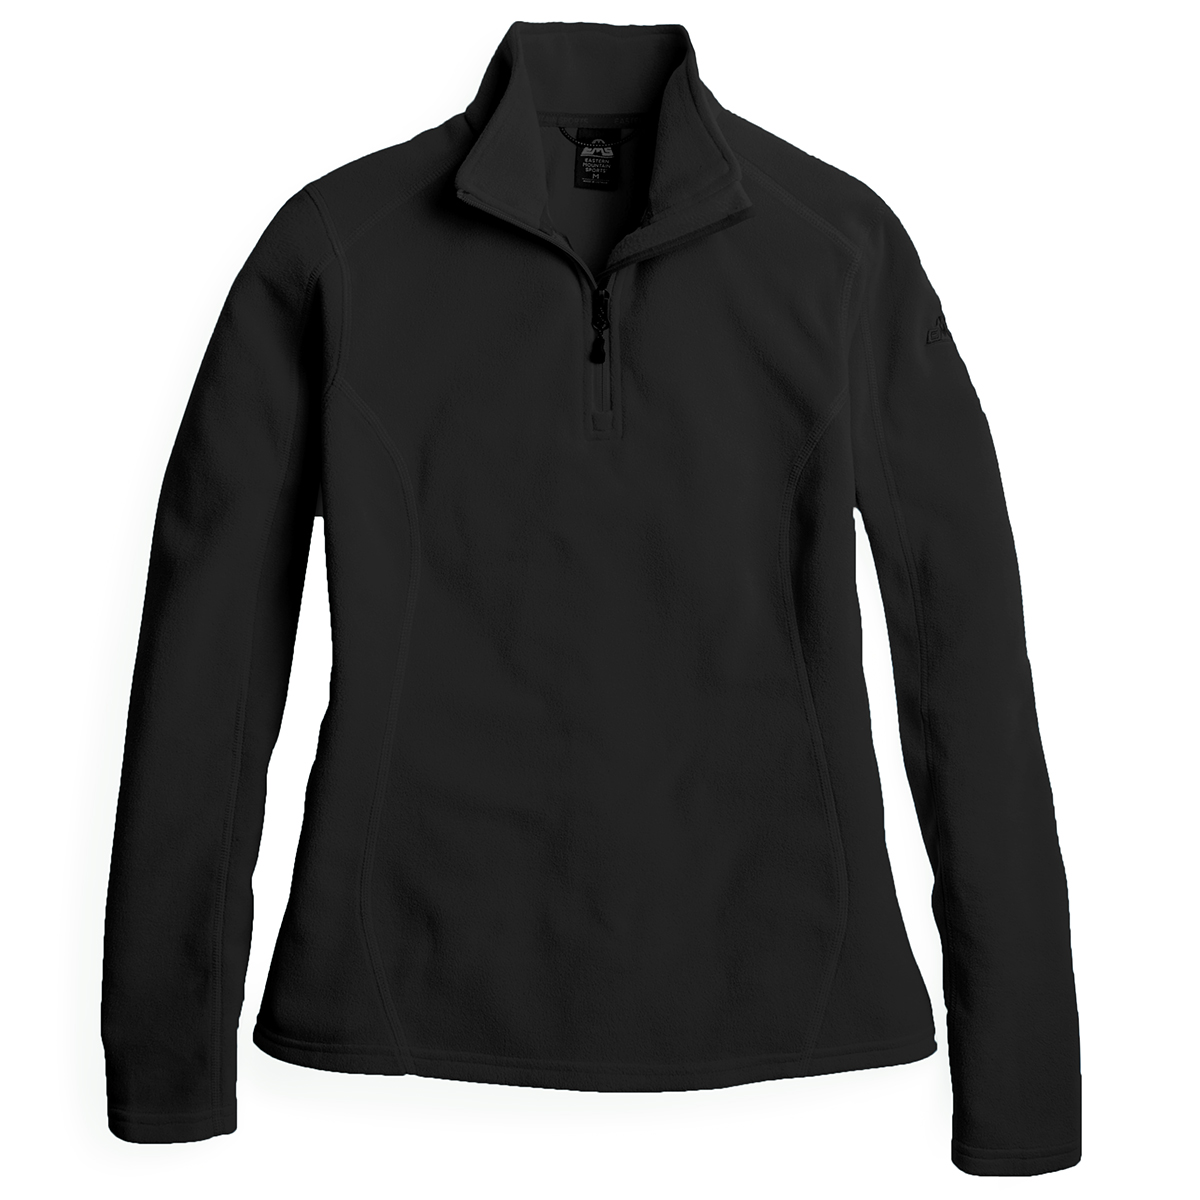 Ems Women's Micro Fleece 1/4-Zip Pullover